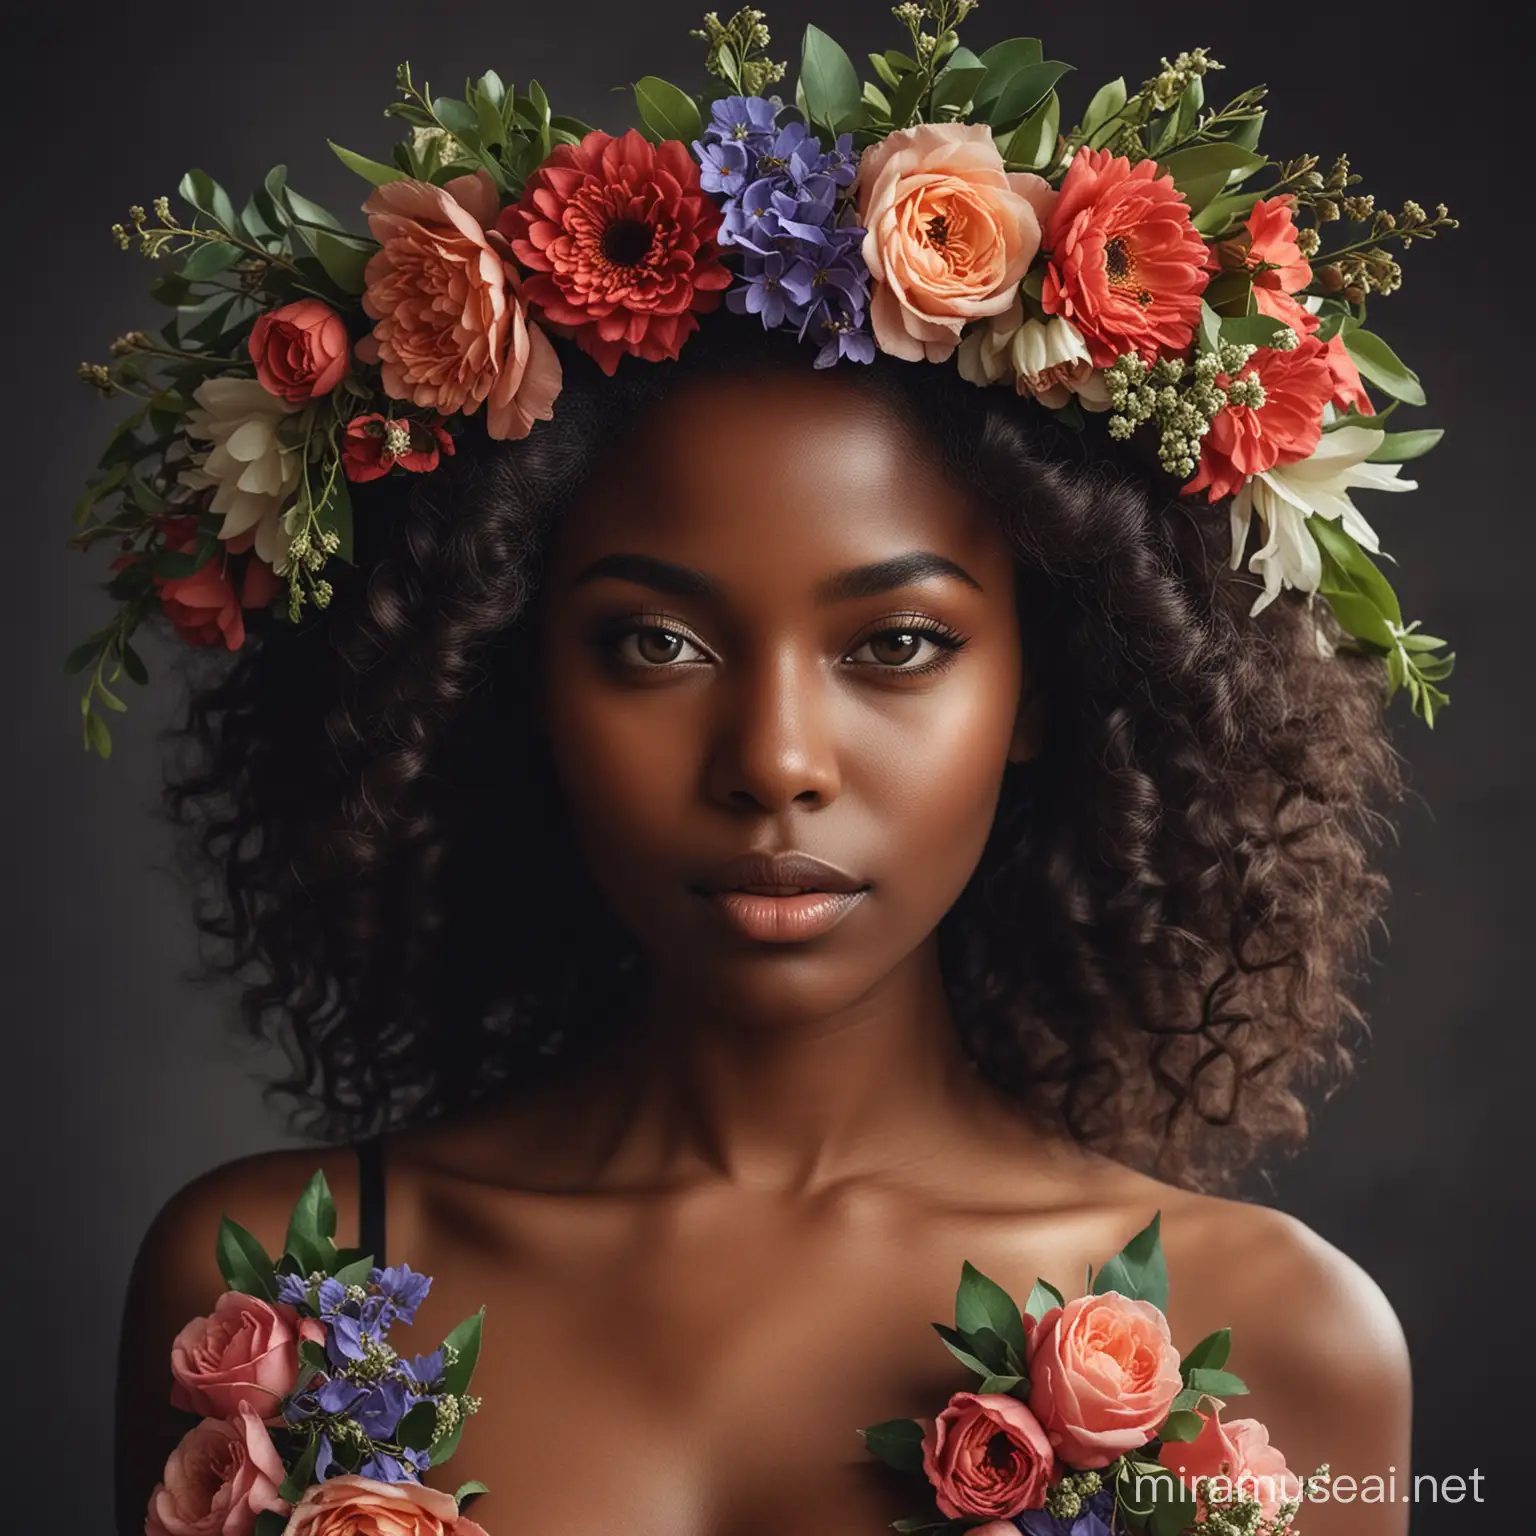 Чувственный Портрет темнокожей девушки в венке из цветов